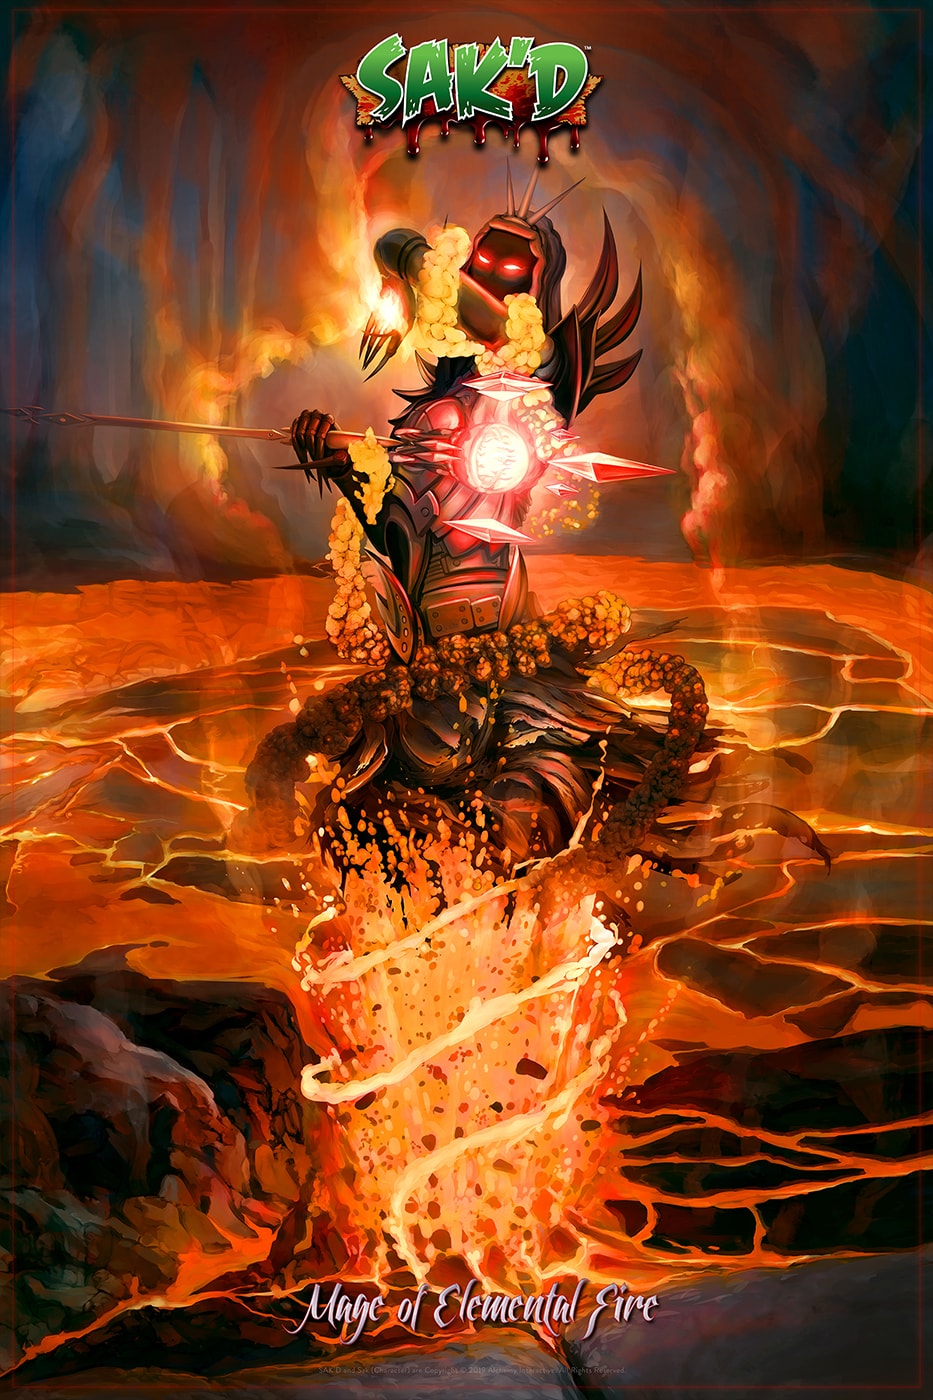 SAK'D - Dark Mage of Elemental Fire